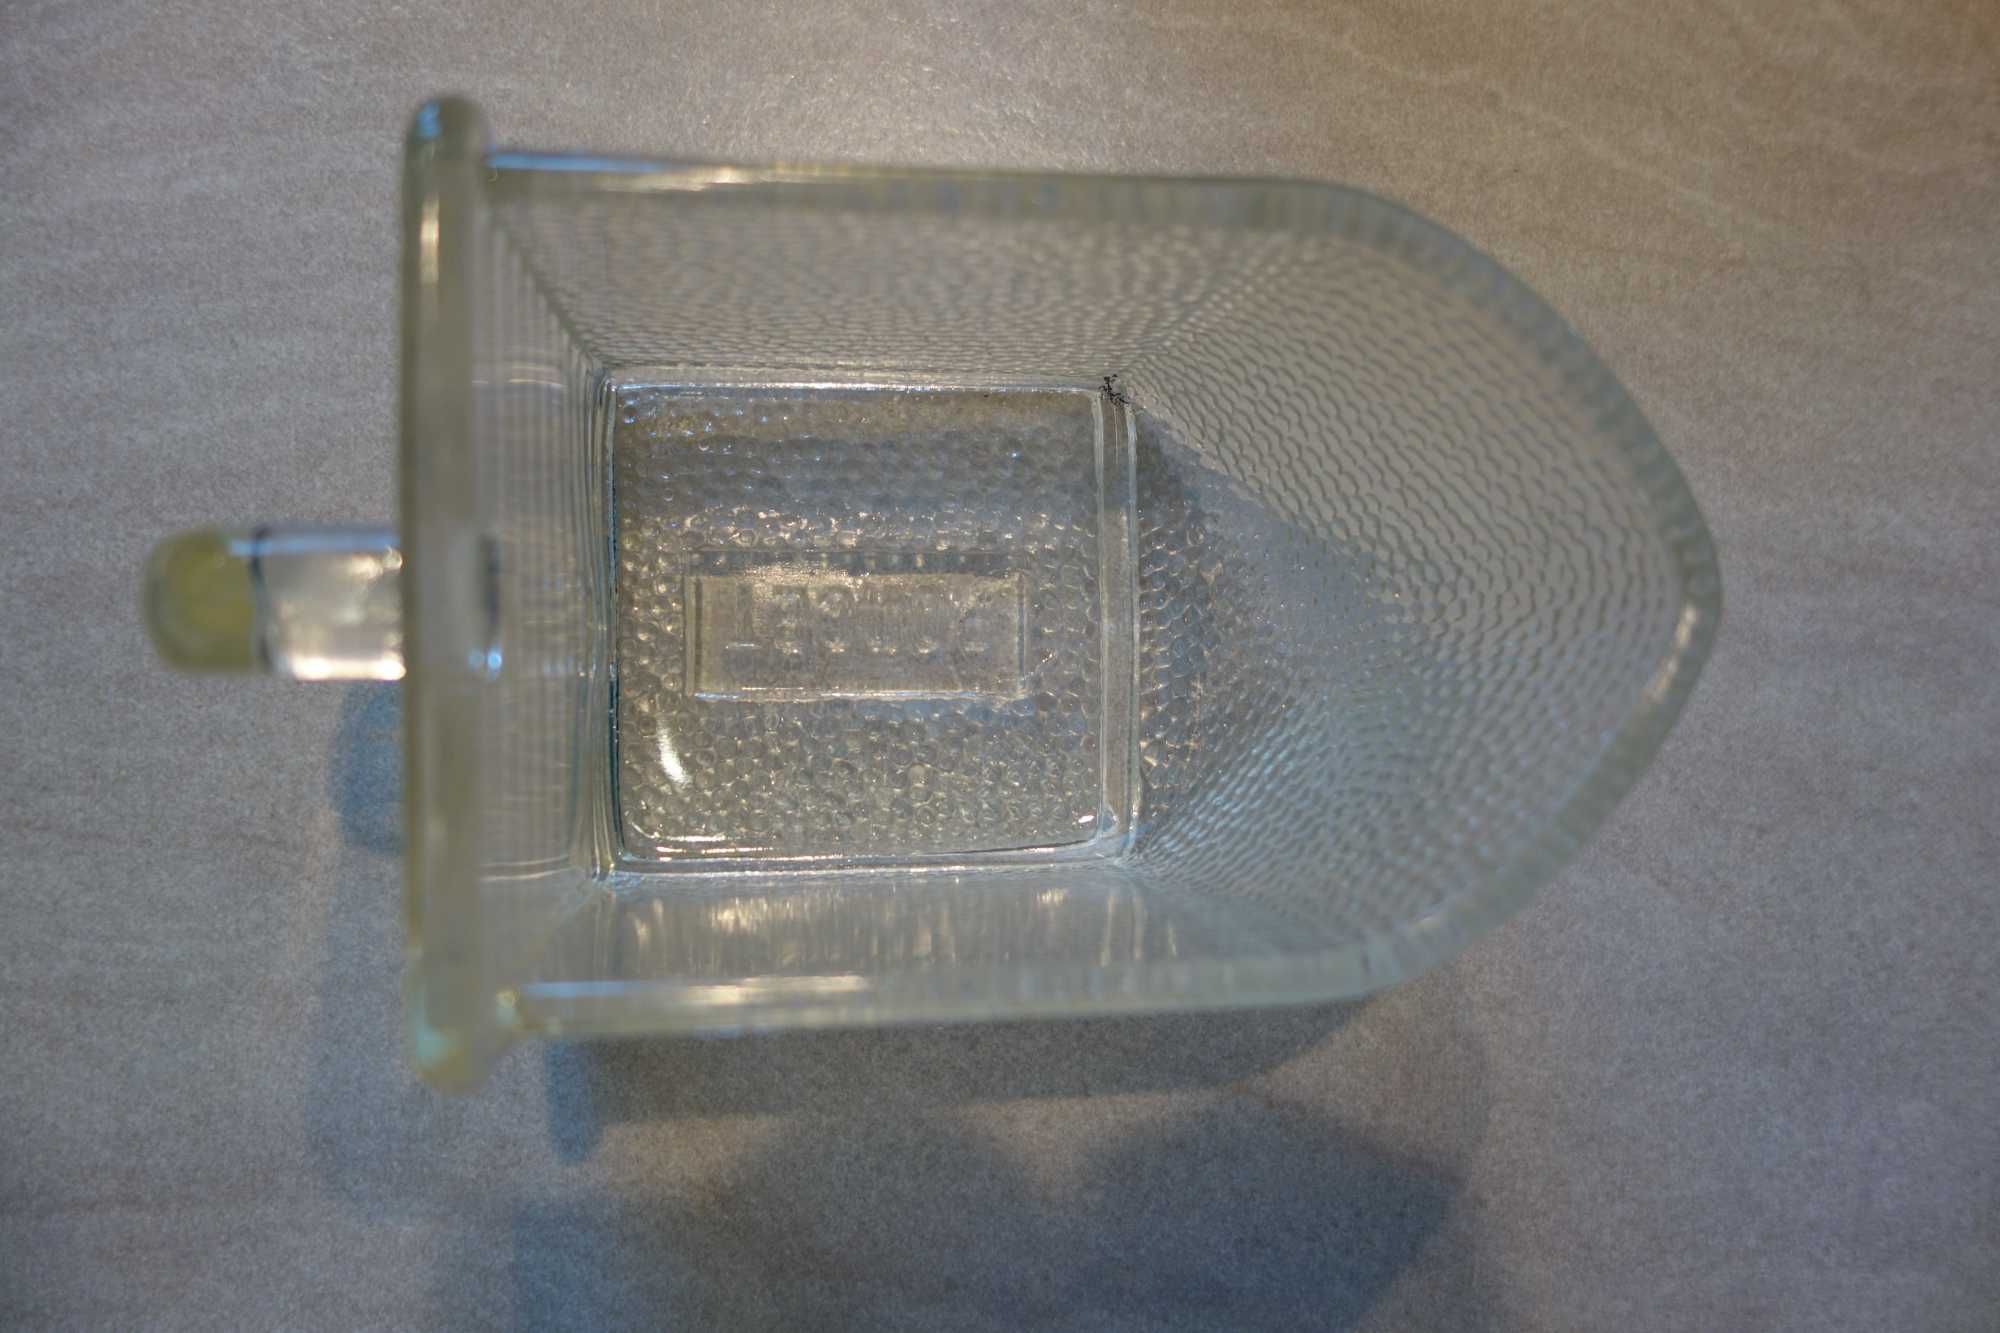 Poncet szklana szufladka z przedwojennego kredensu